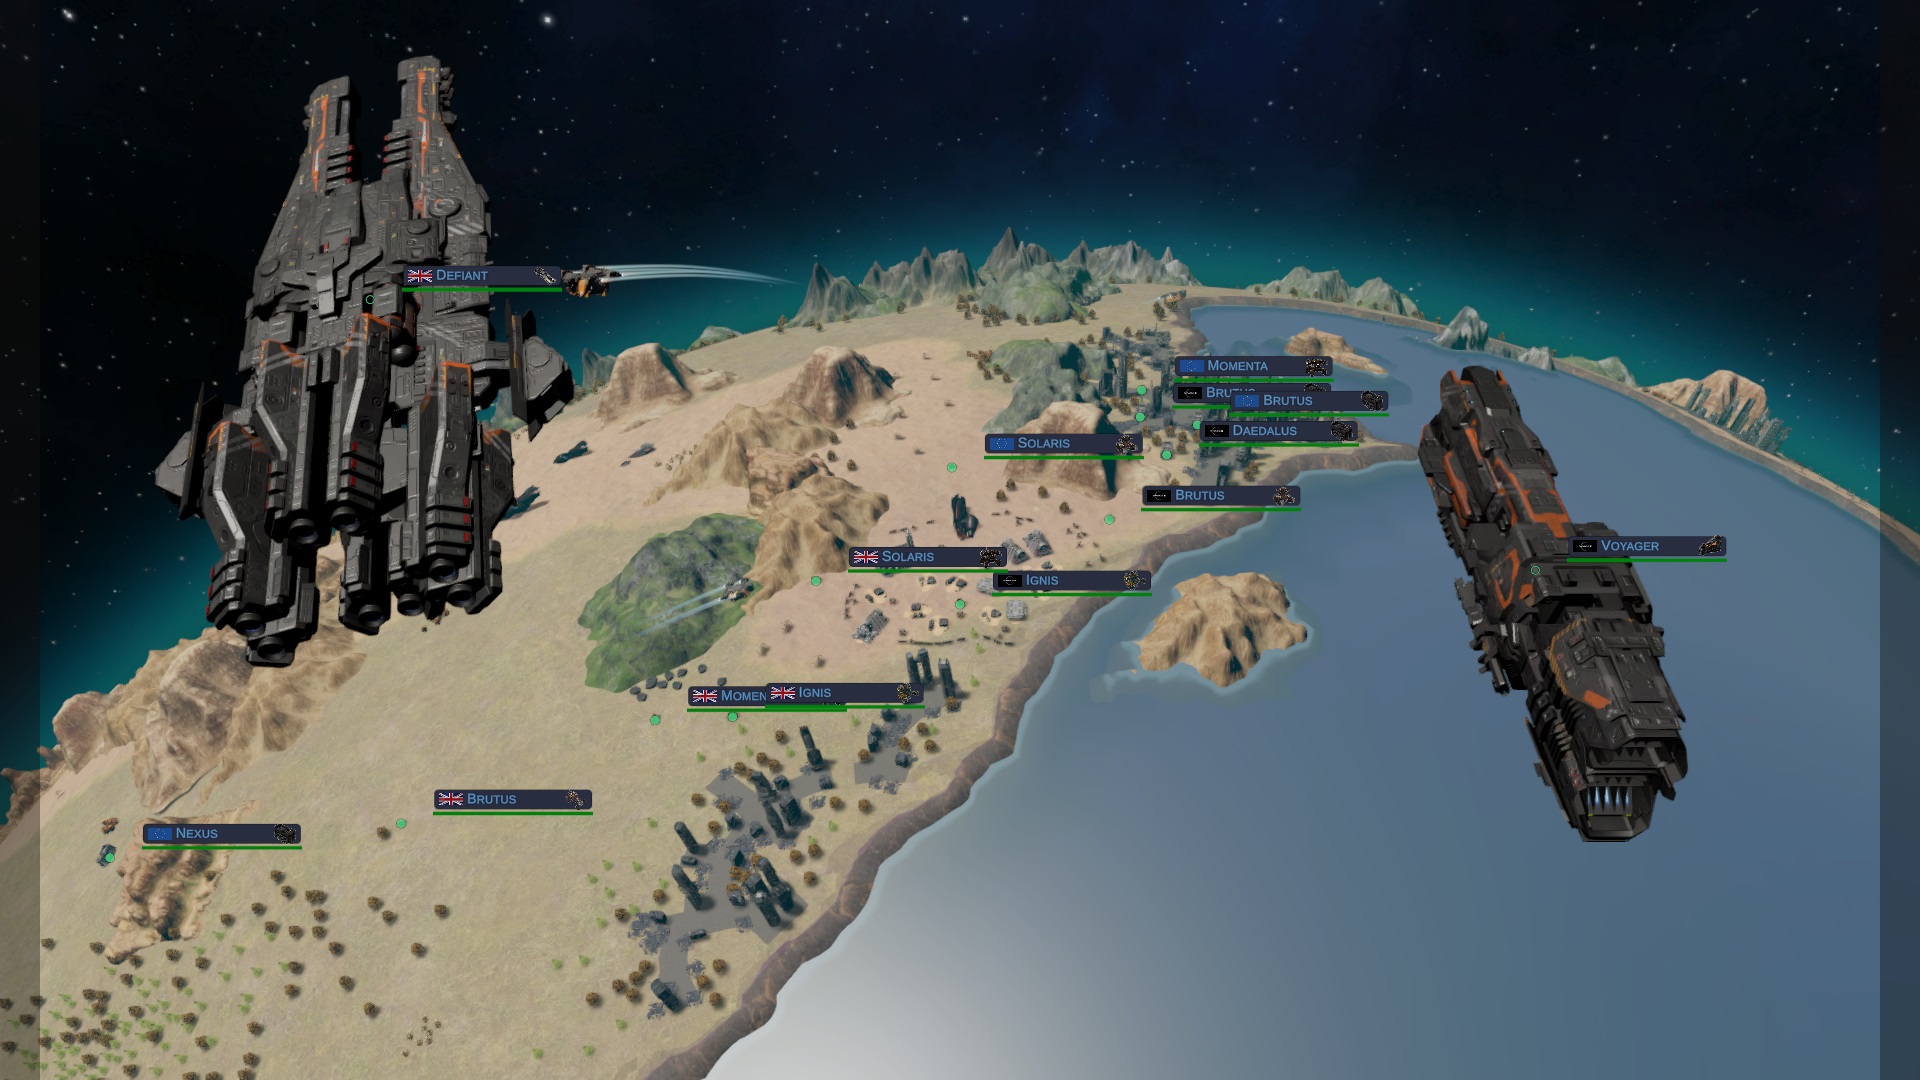 Homeworld et Battlestar Galactica entrent en collision dans le nouveau jeu RTS spatial Fragile Existence